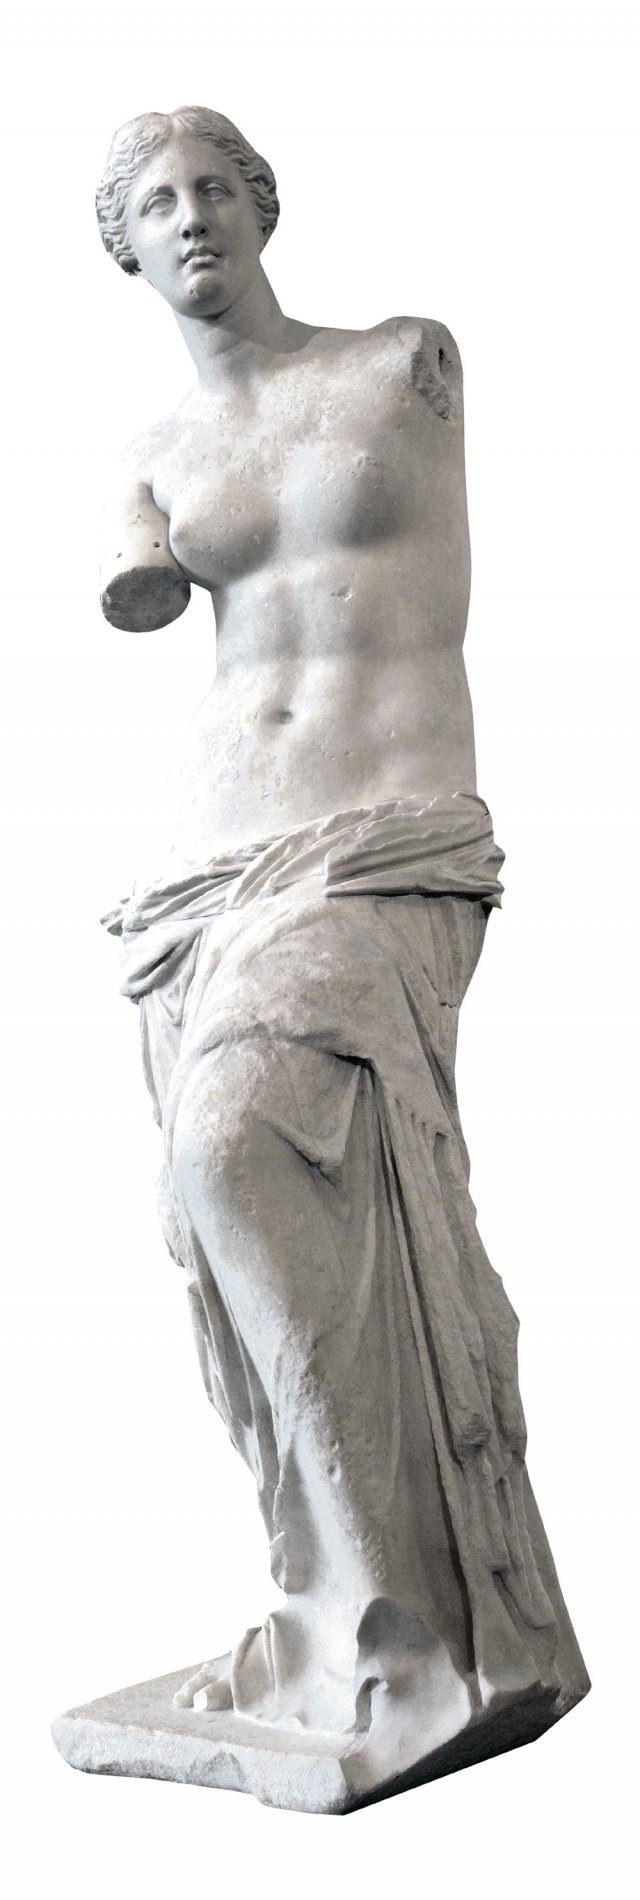 밀로의 비너스는 고대 그리스 예술의 정수로 꼽혀 왔다. 하지만 이 조각상은 최근 연구 결과 고대 그리스가 아닌 로마 시대 복제품으로 밝혀졌다. 현재 프랑스 파리 루브르 박물관에 전시돼 있다. 사진 출처 위키미디어